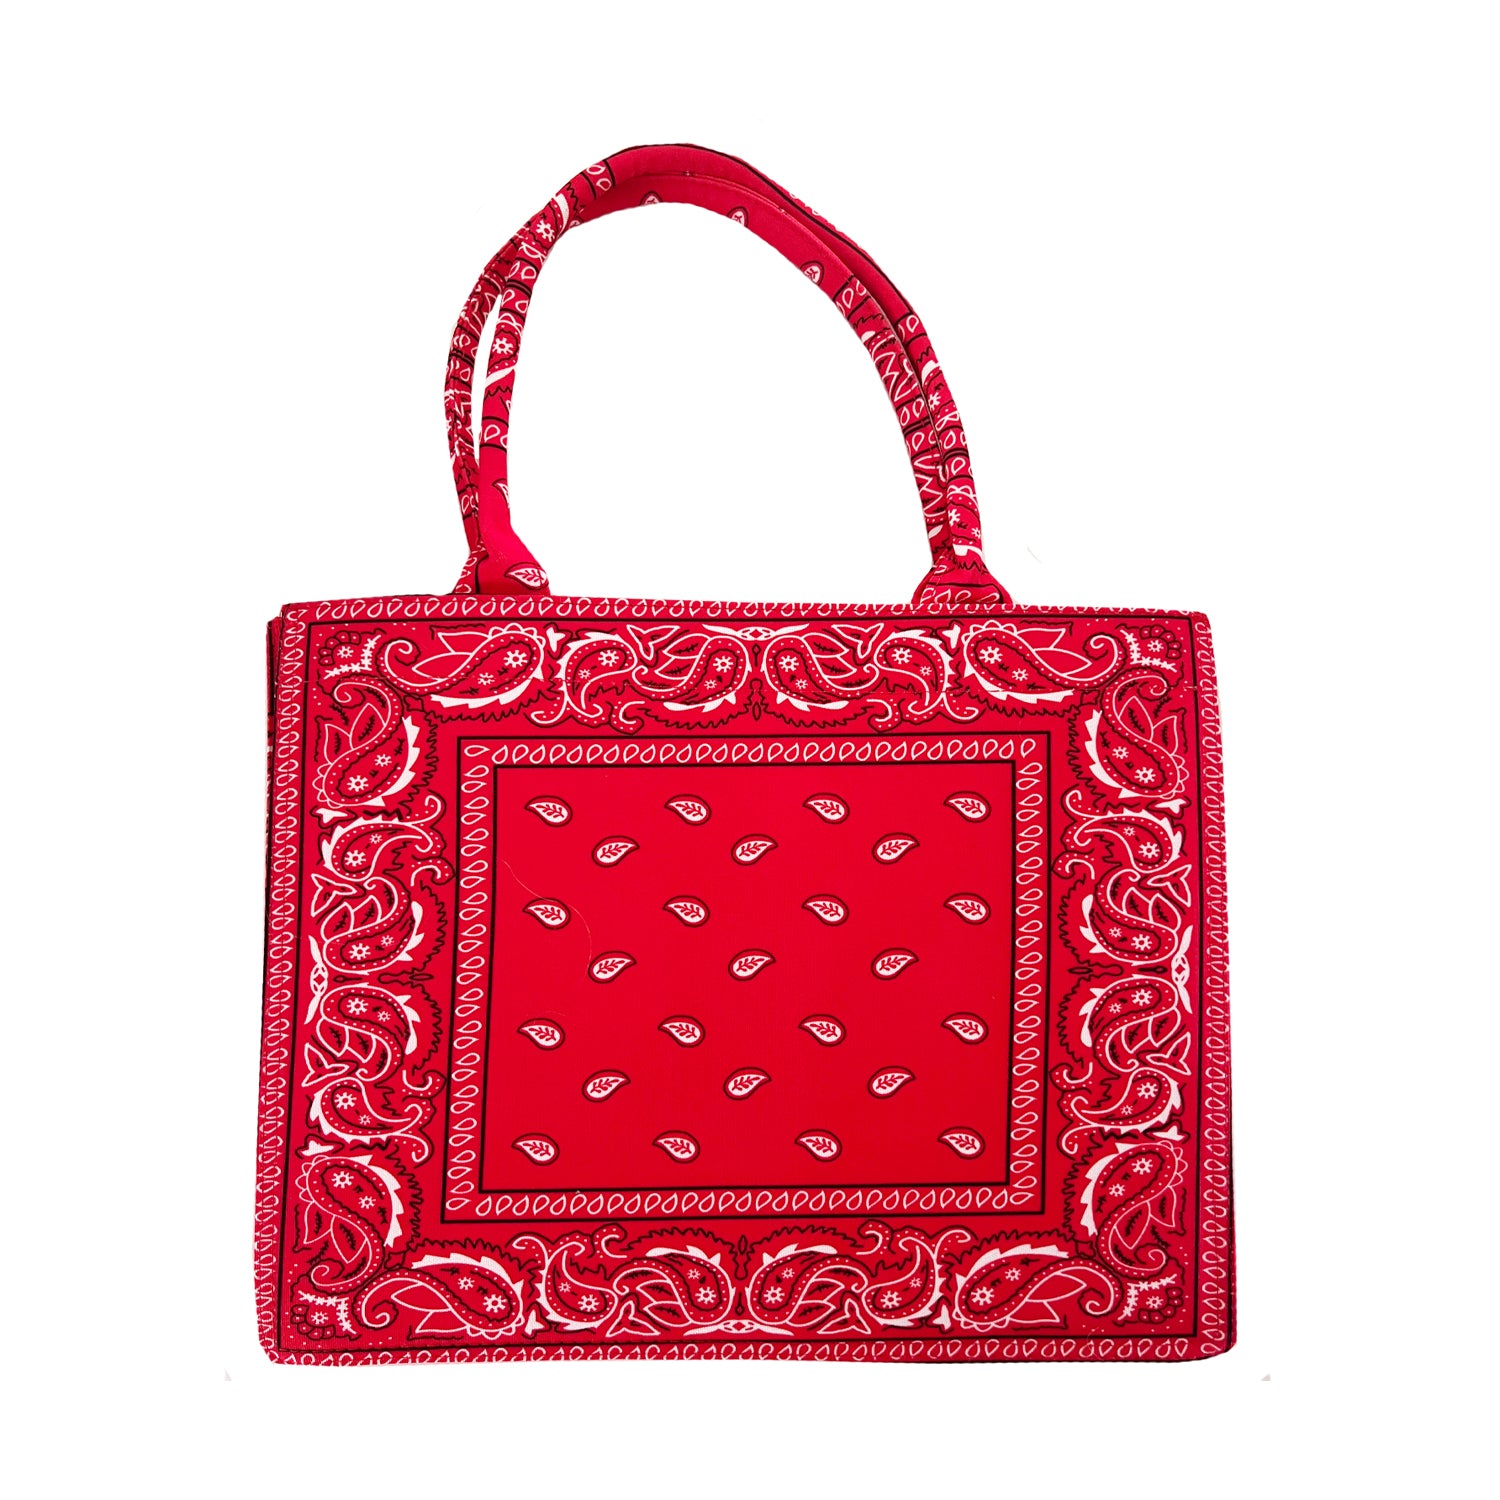 Grote shopper met rode en witte bandana print. De tas is open aan de bovenkant en is perfect te gebruiken als boodschappen, strand en/of weekendtas. De tas is gemaakt van textiel. Rode bandana print shopper tas.